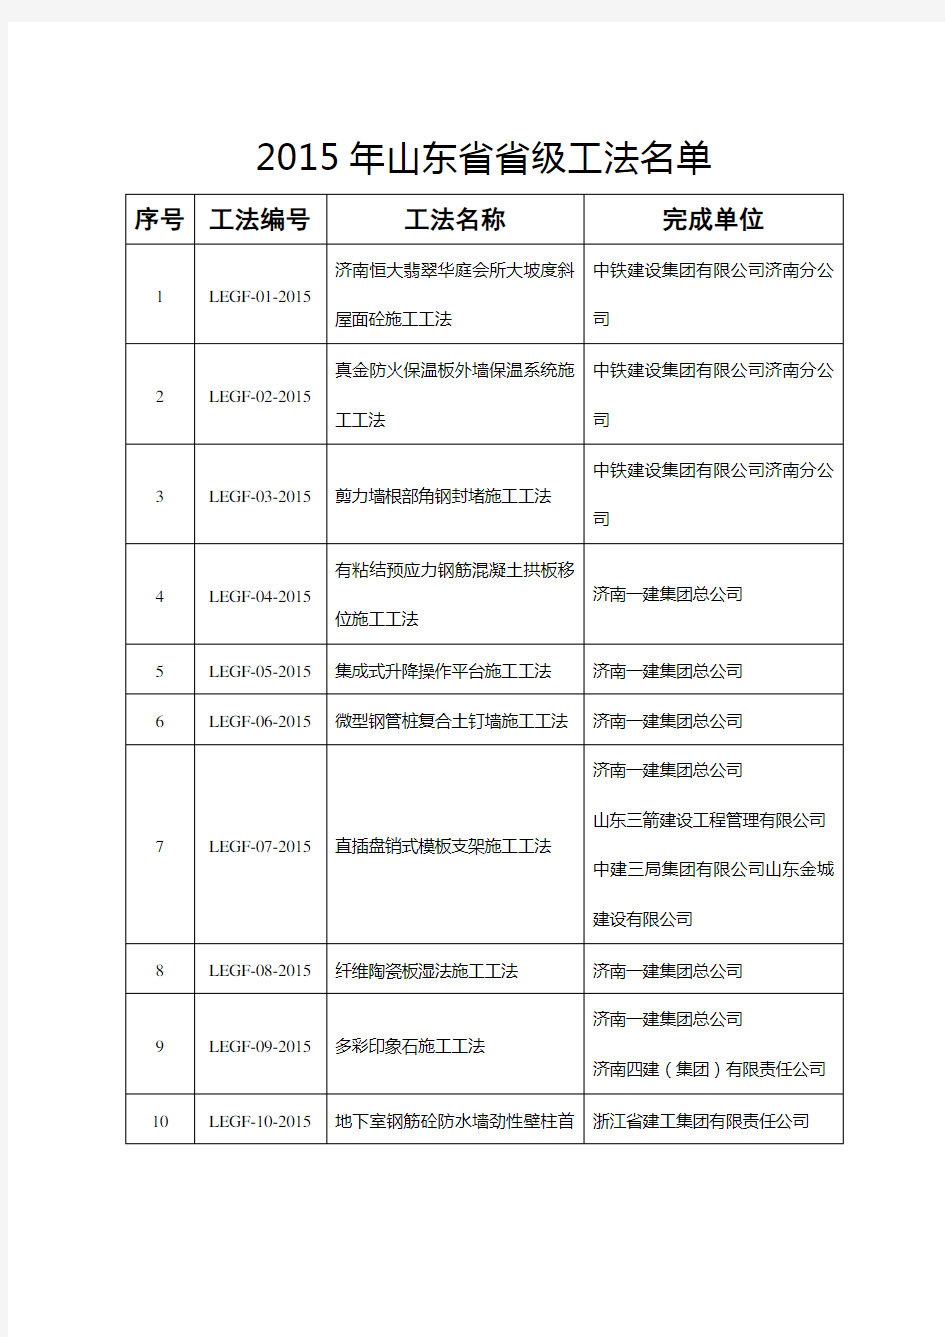 山东省建筑工程管理局关于对2015年山东省省级工法公示